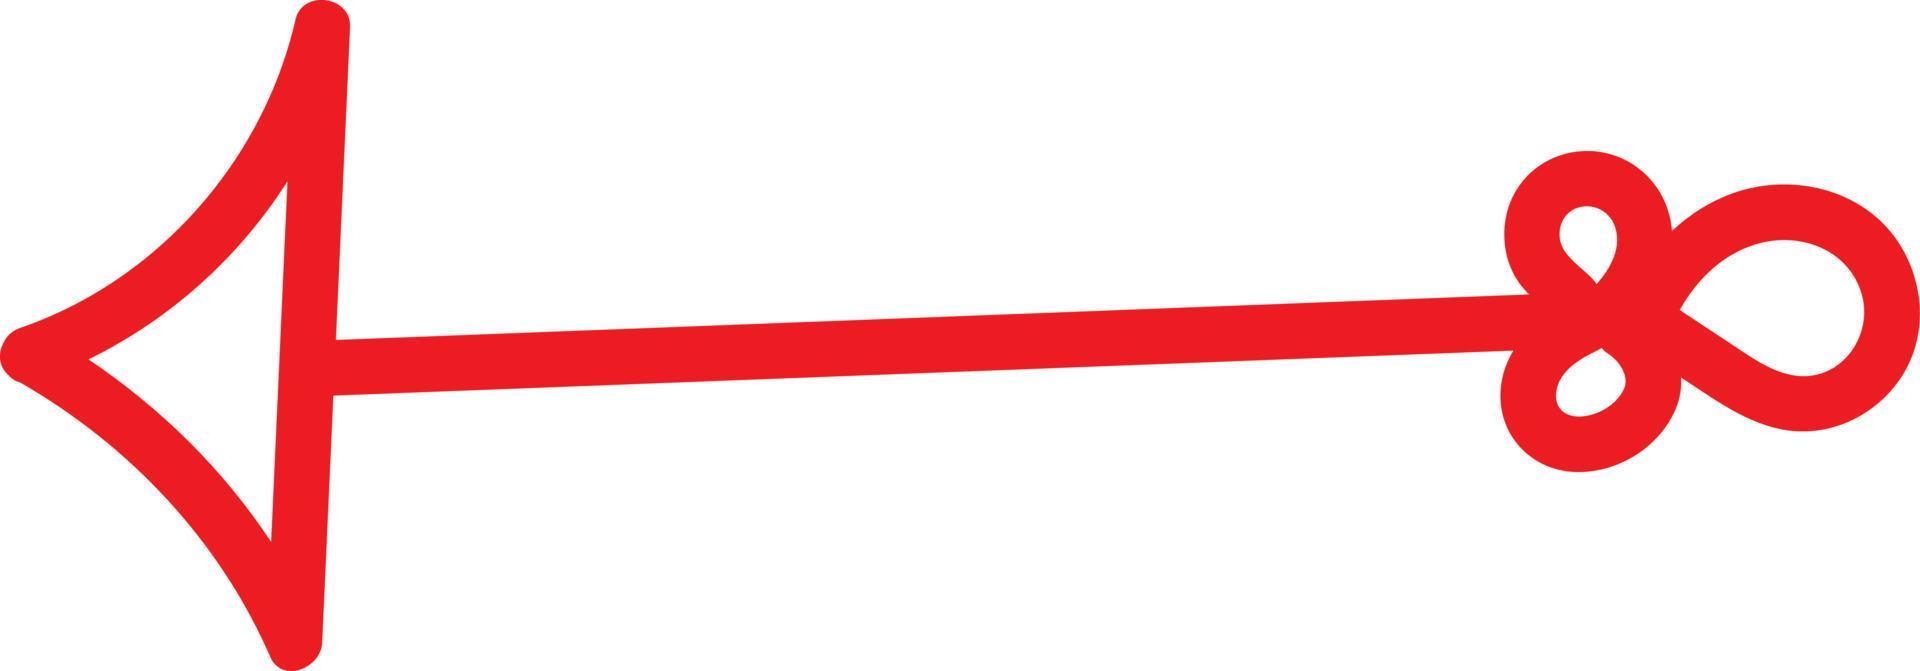 roter Pfeil mit ungewöhnlichem Schwanz, der nach links zeigt, Illustration, Vektor auf weißem Hintergrund.